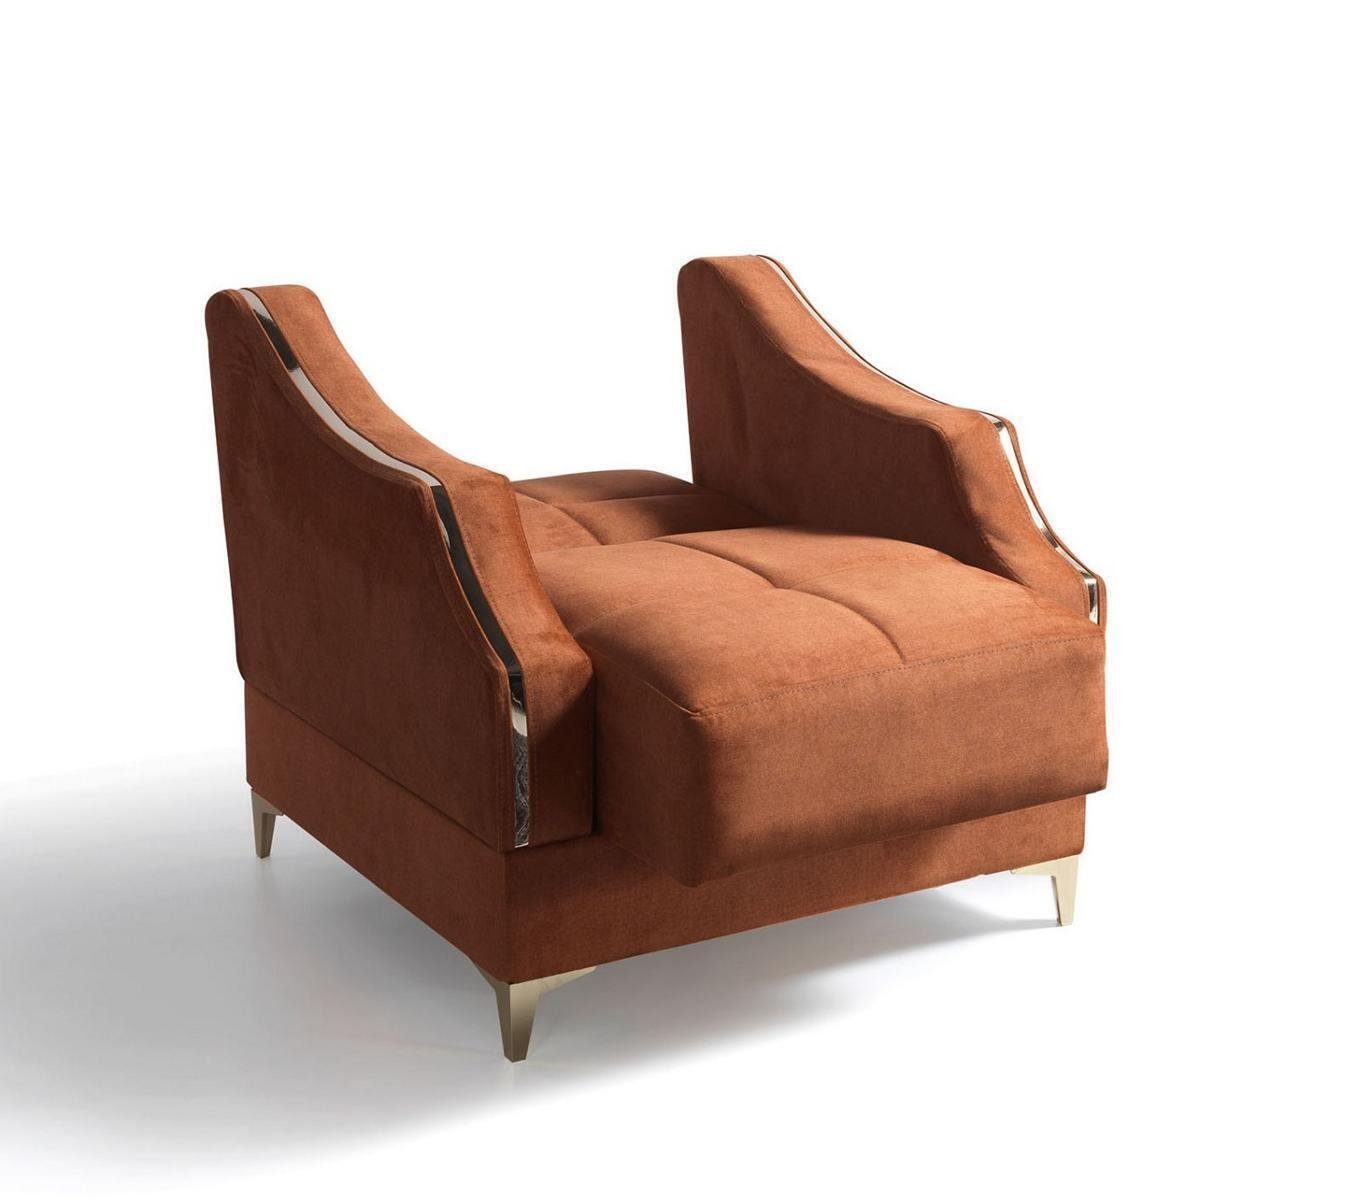 JVmoebel Wohnzimmer Sofagarnitur Sitzer Sessel, Sofa Wohnzimmer-Set Set Komplett 3+2+1+1 Europe Made In Textil